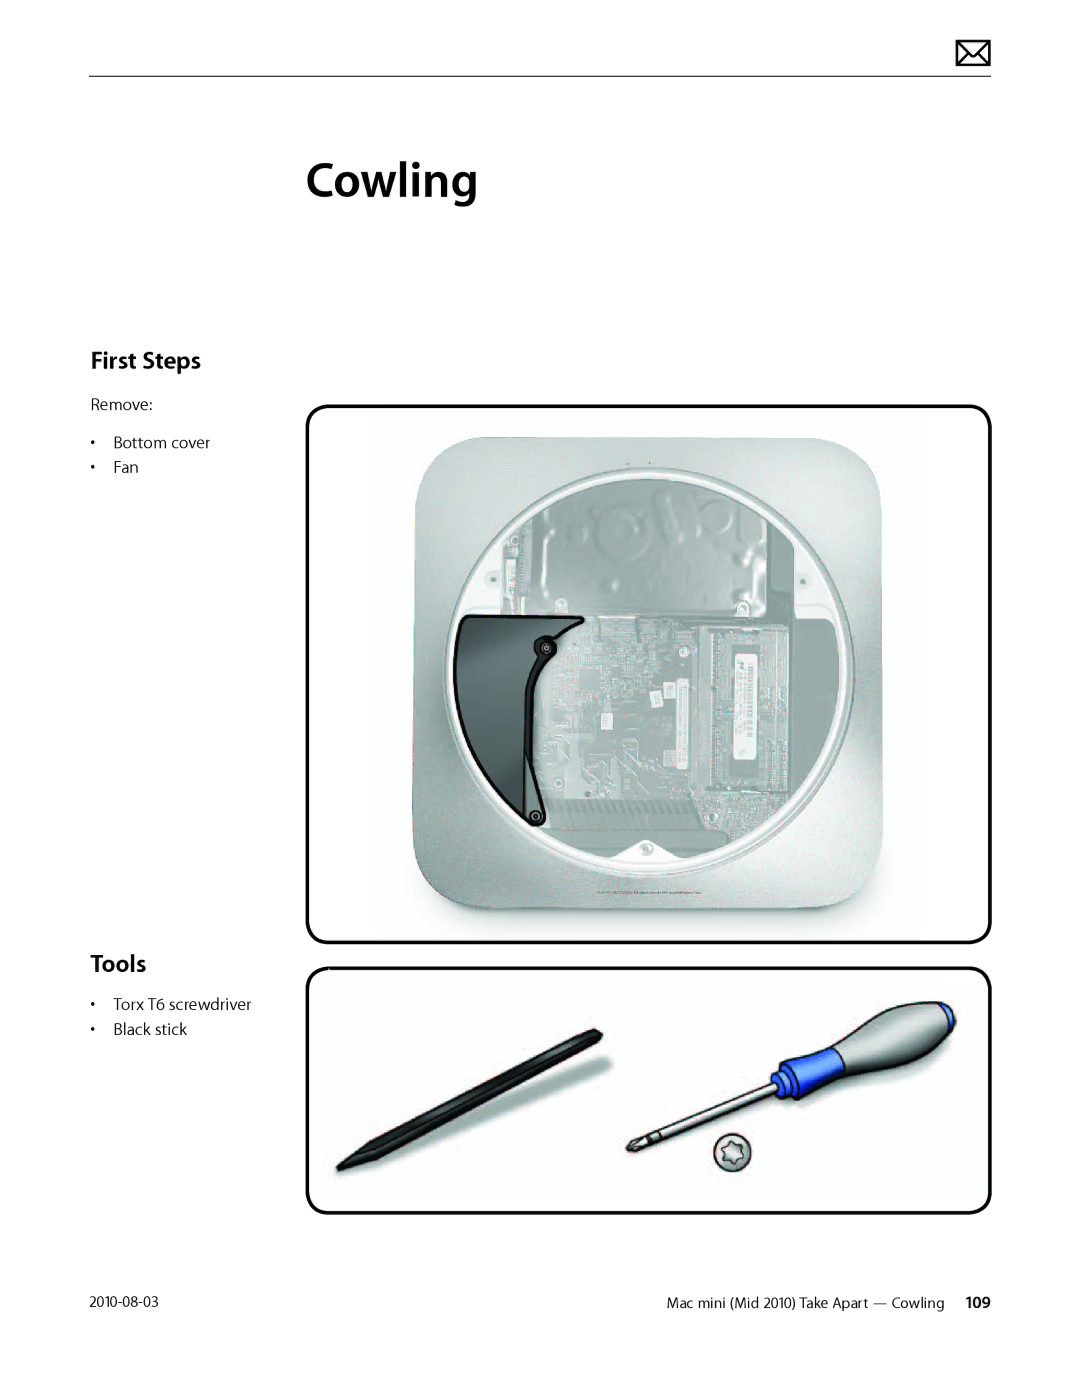 Apple Mac mini manual Cowling, First Steps 